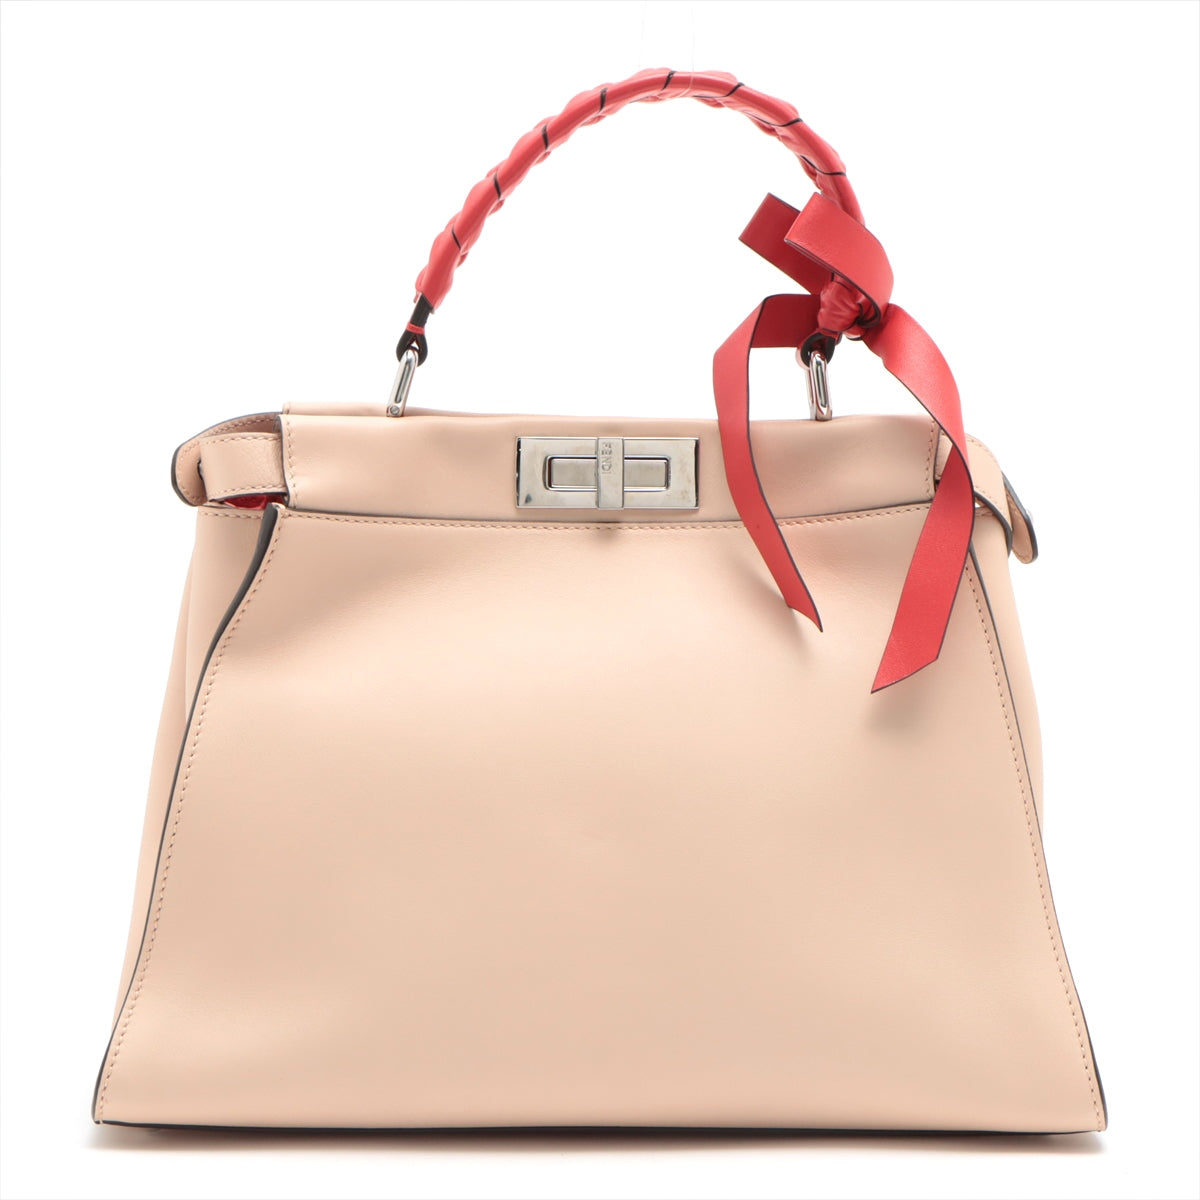 Fendi PEEKABOO REGULAR Leather 2way handbag Beige 8BN290